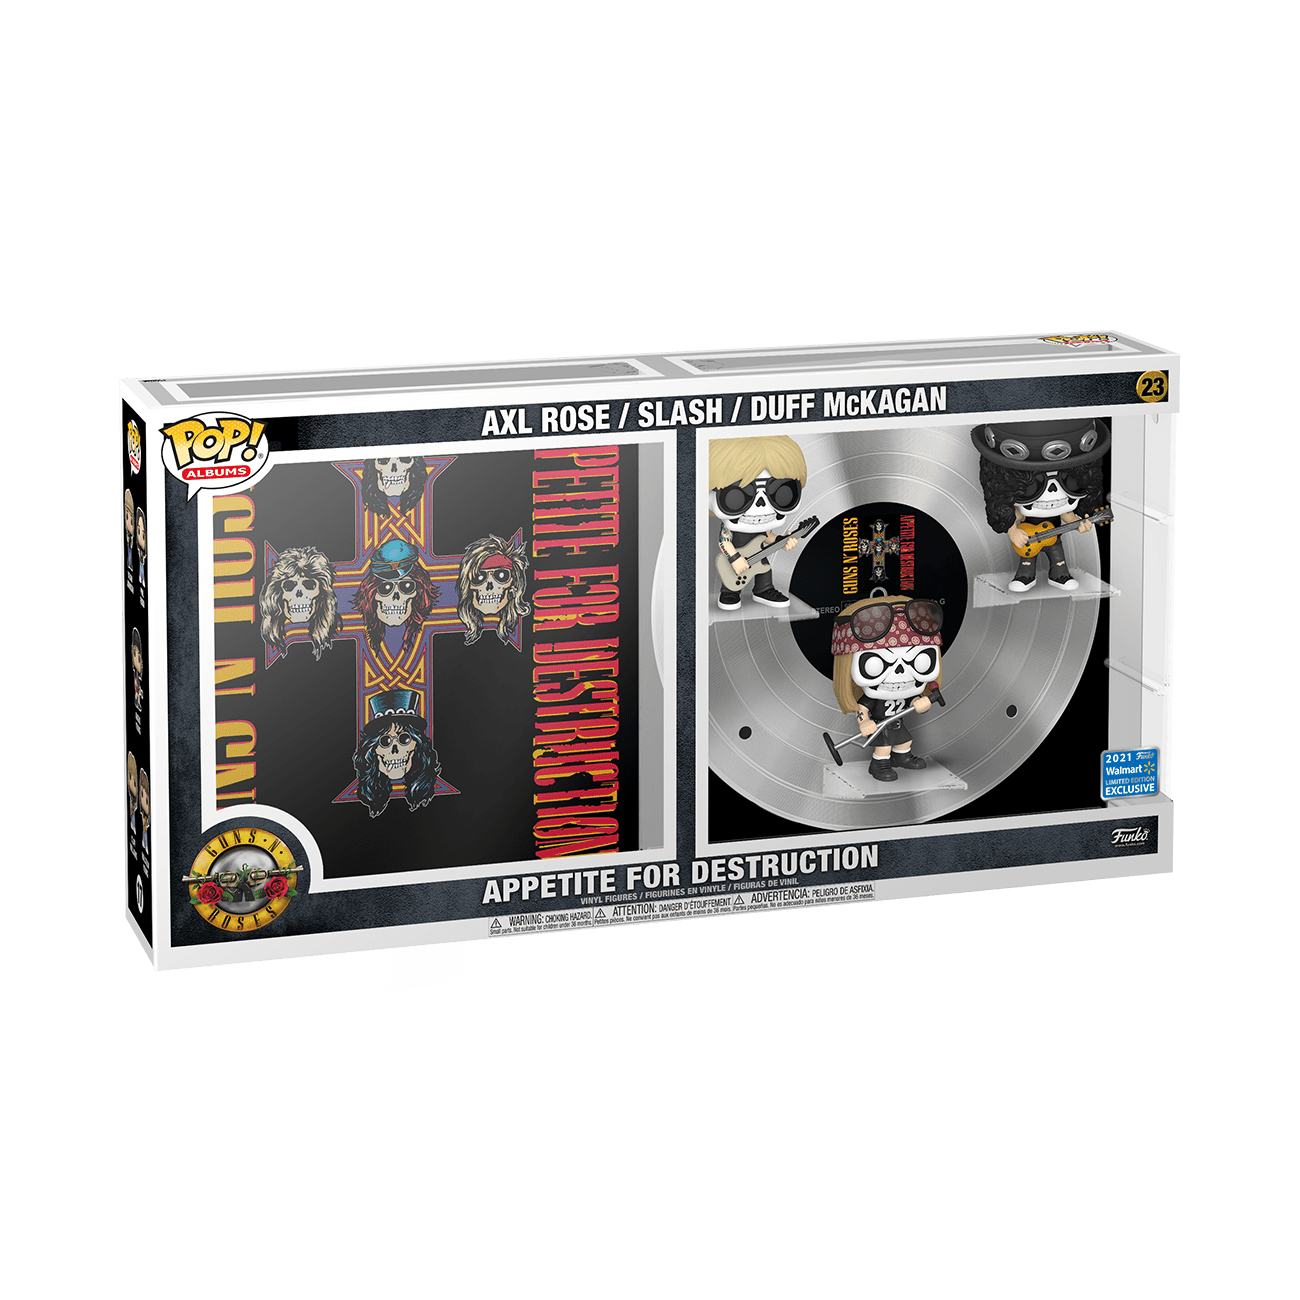 Guns N Roses Poster Appetite For Destruction Album n' 